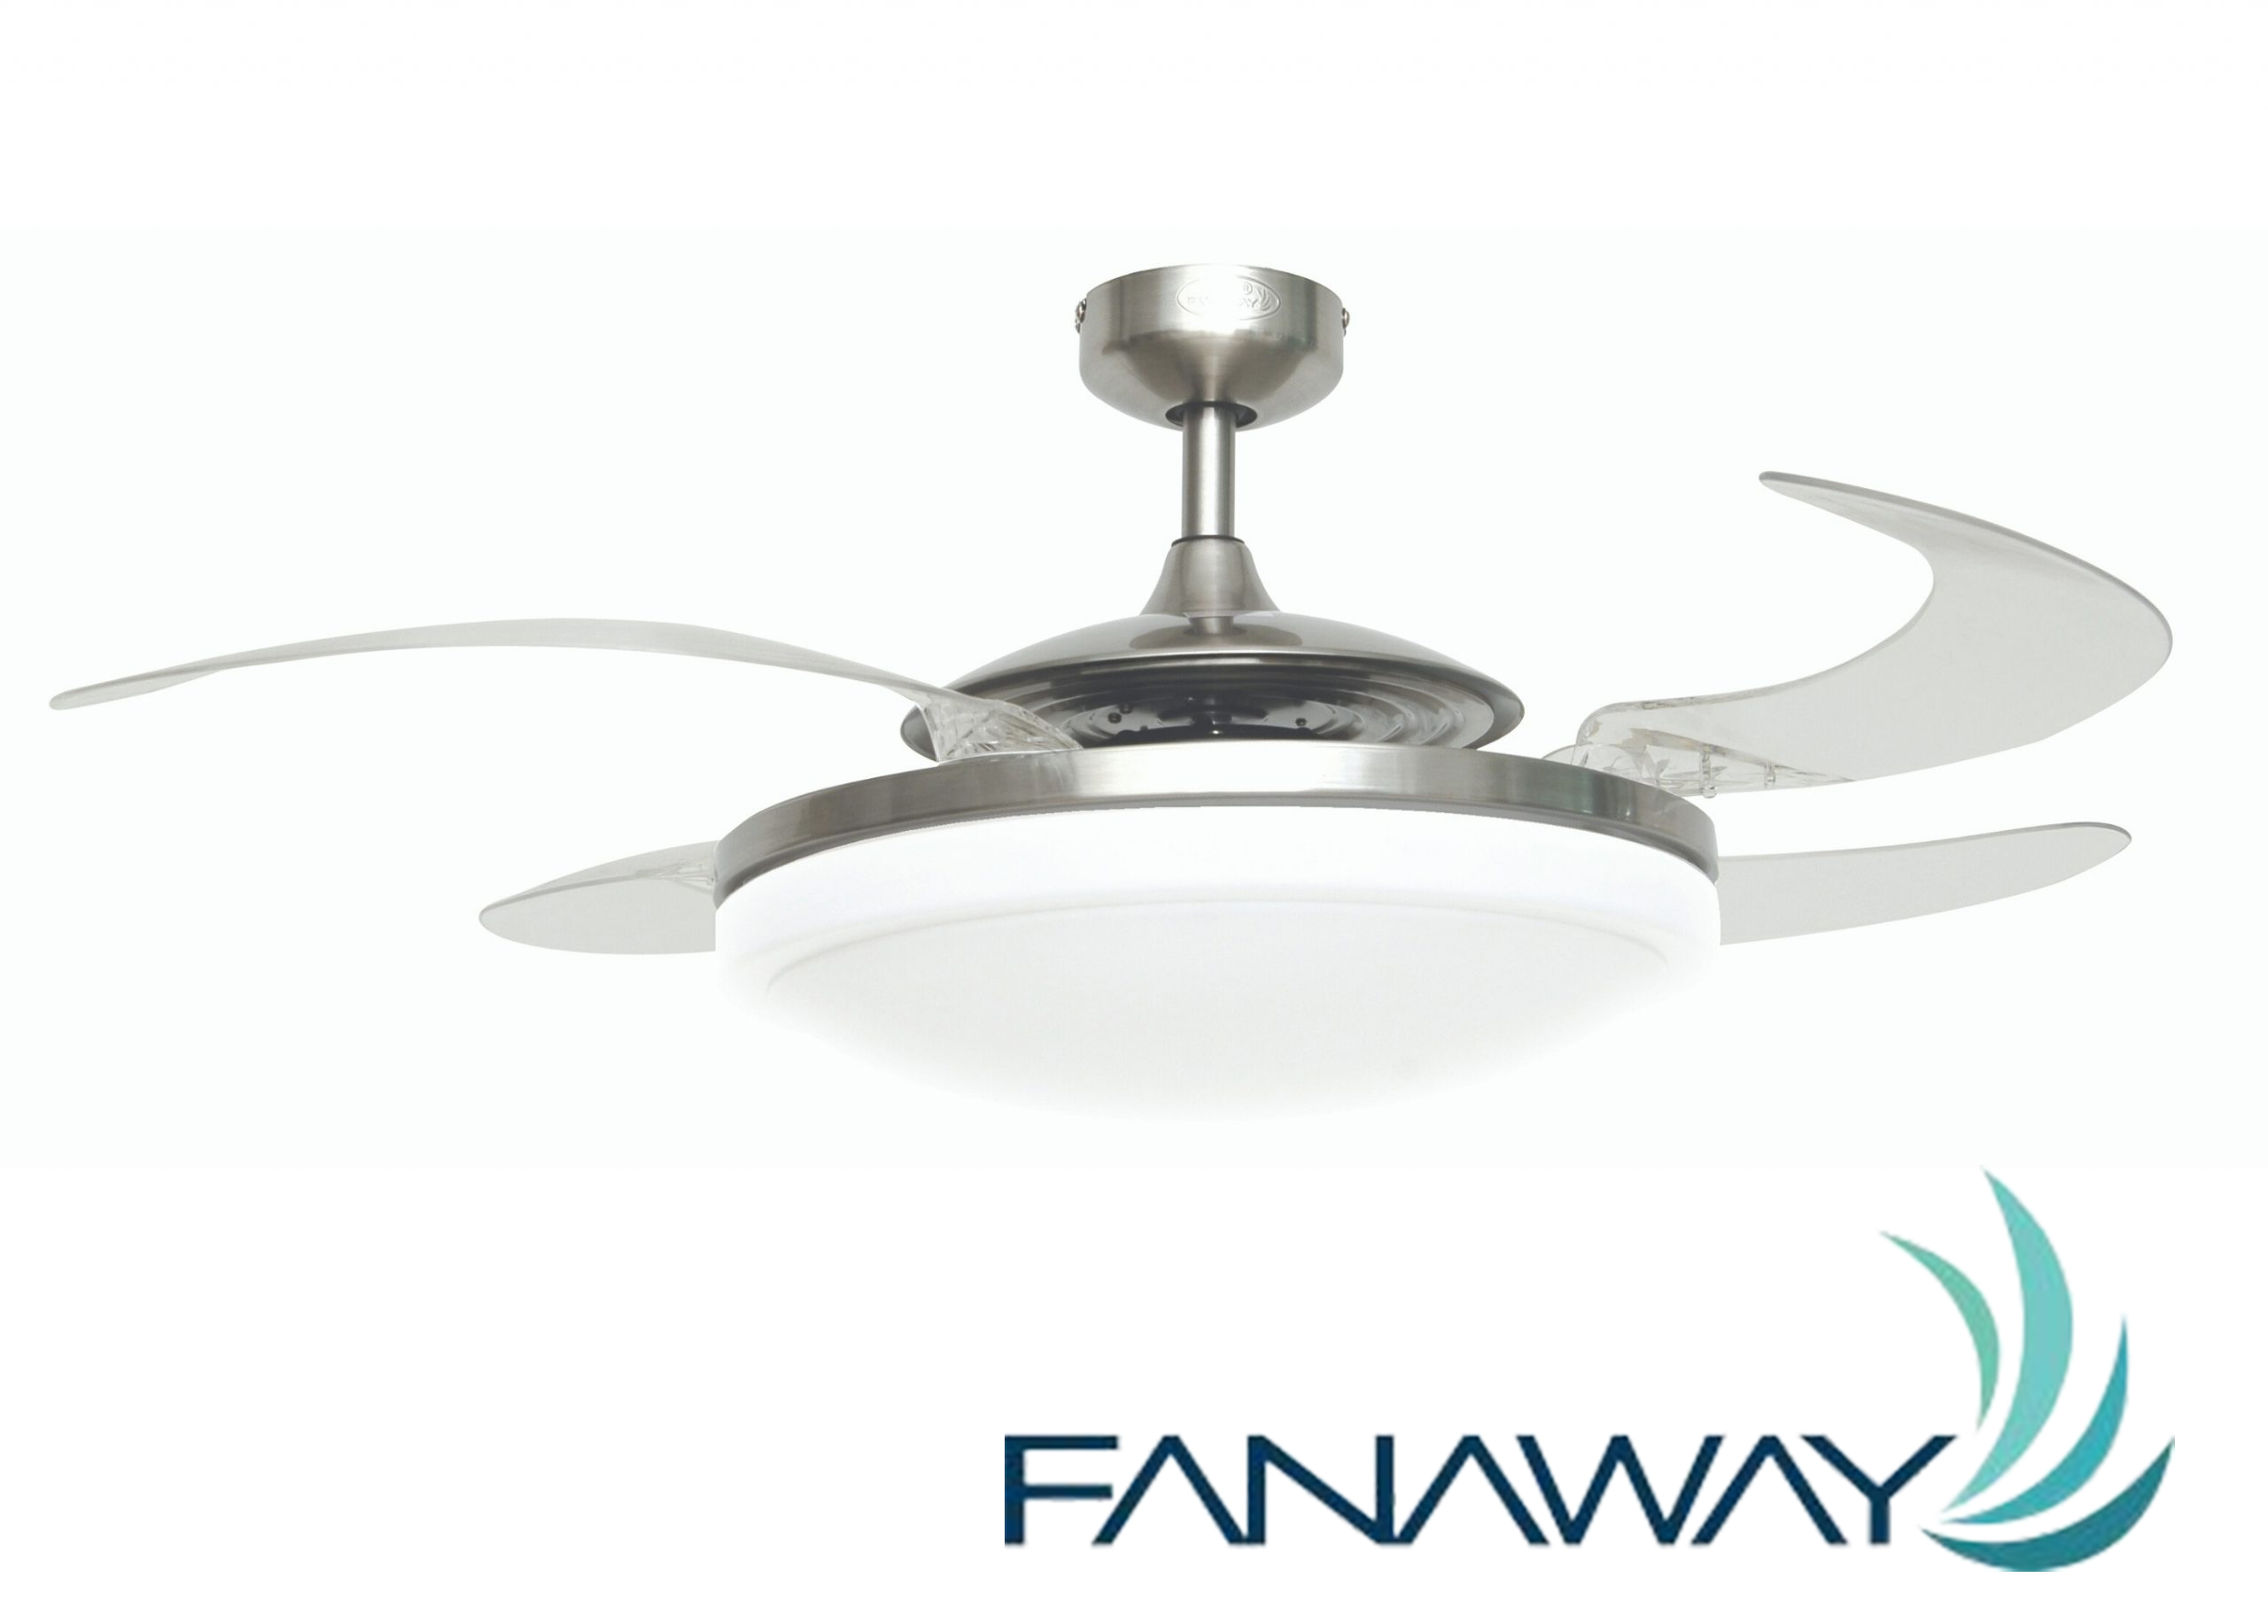 Deckenventilator Fanaway Evo2 Endure Chrom gebürstet mit Beleuchtung und Fernbedienung